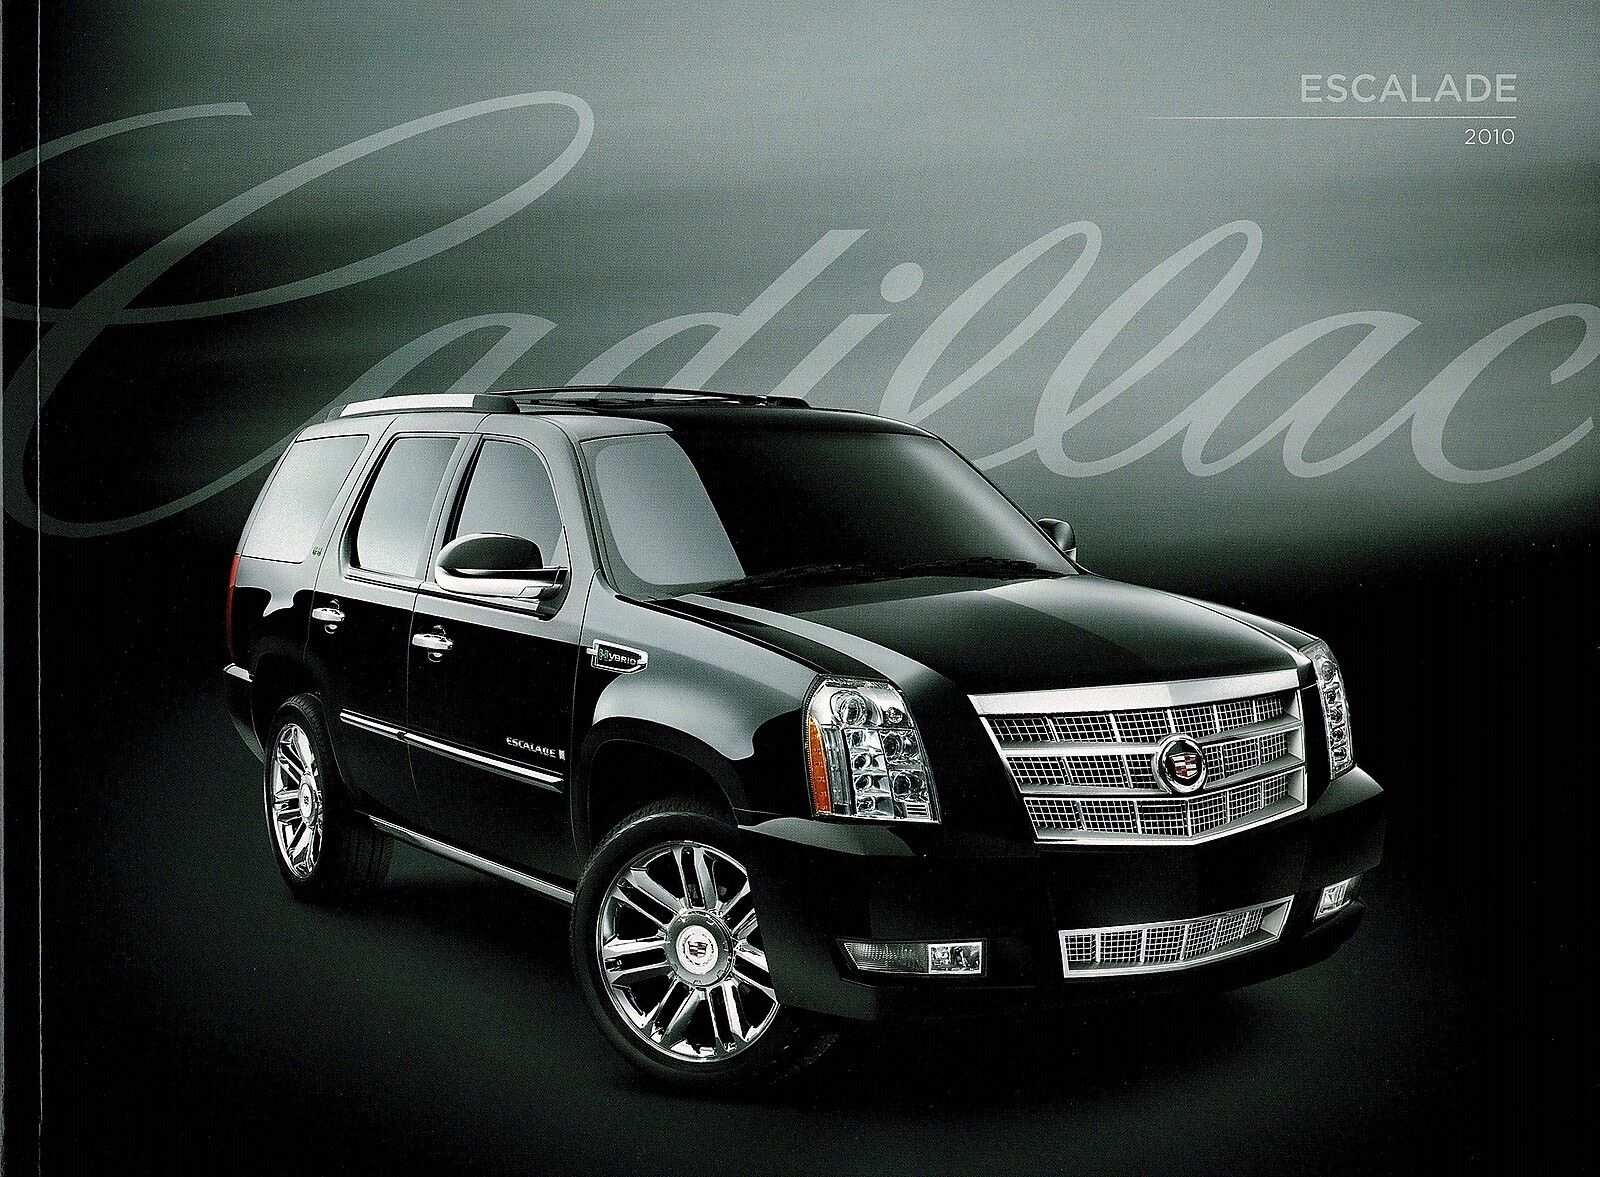 2010 Cadillac Escalade Hybrid Platinum ESV EXT 32 Page Deluxe Sales  Brochure | eBay